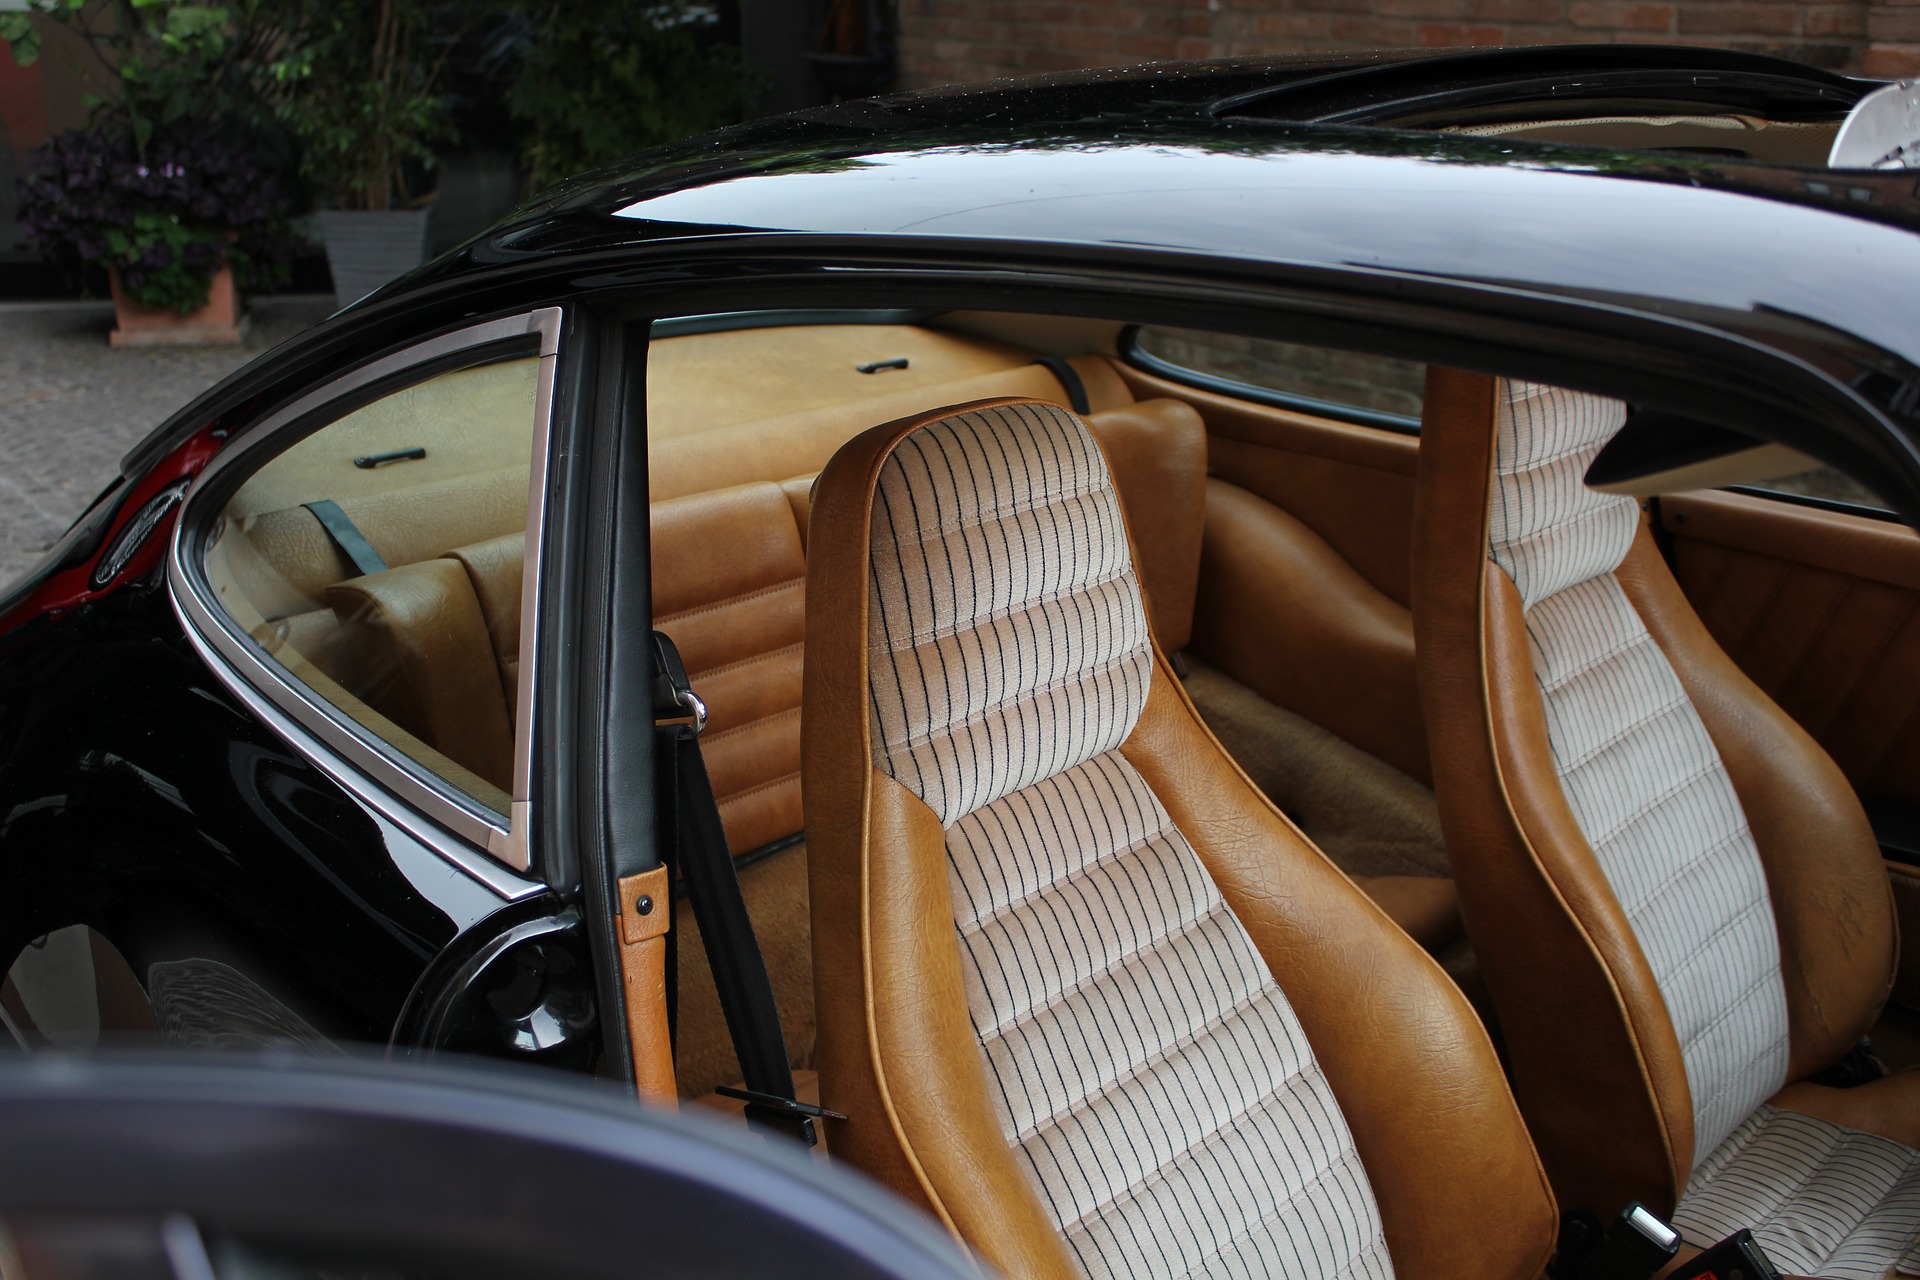 coprisedile coprisedili copertura sedile proteggi protezione seduta auto  macchina cotone automobile robusto